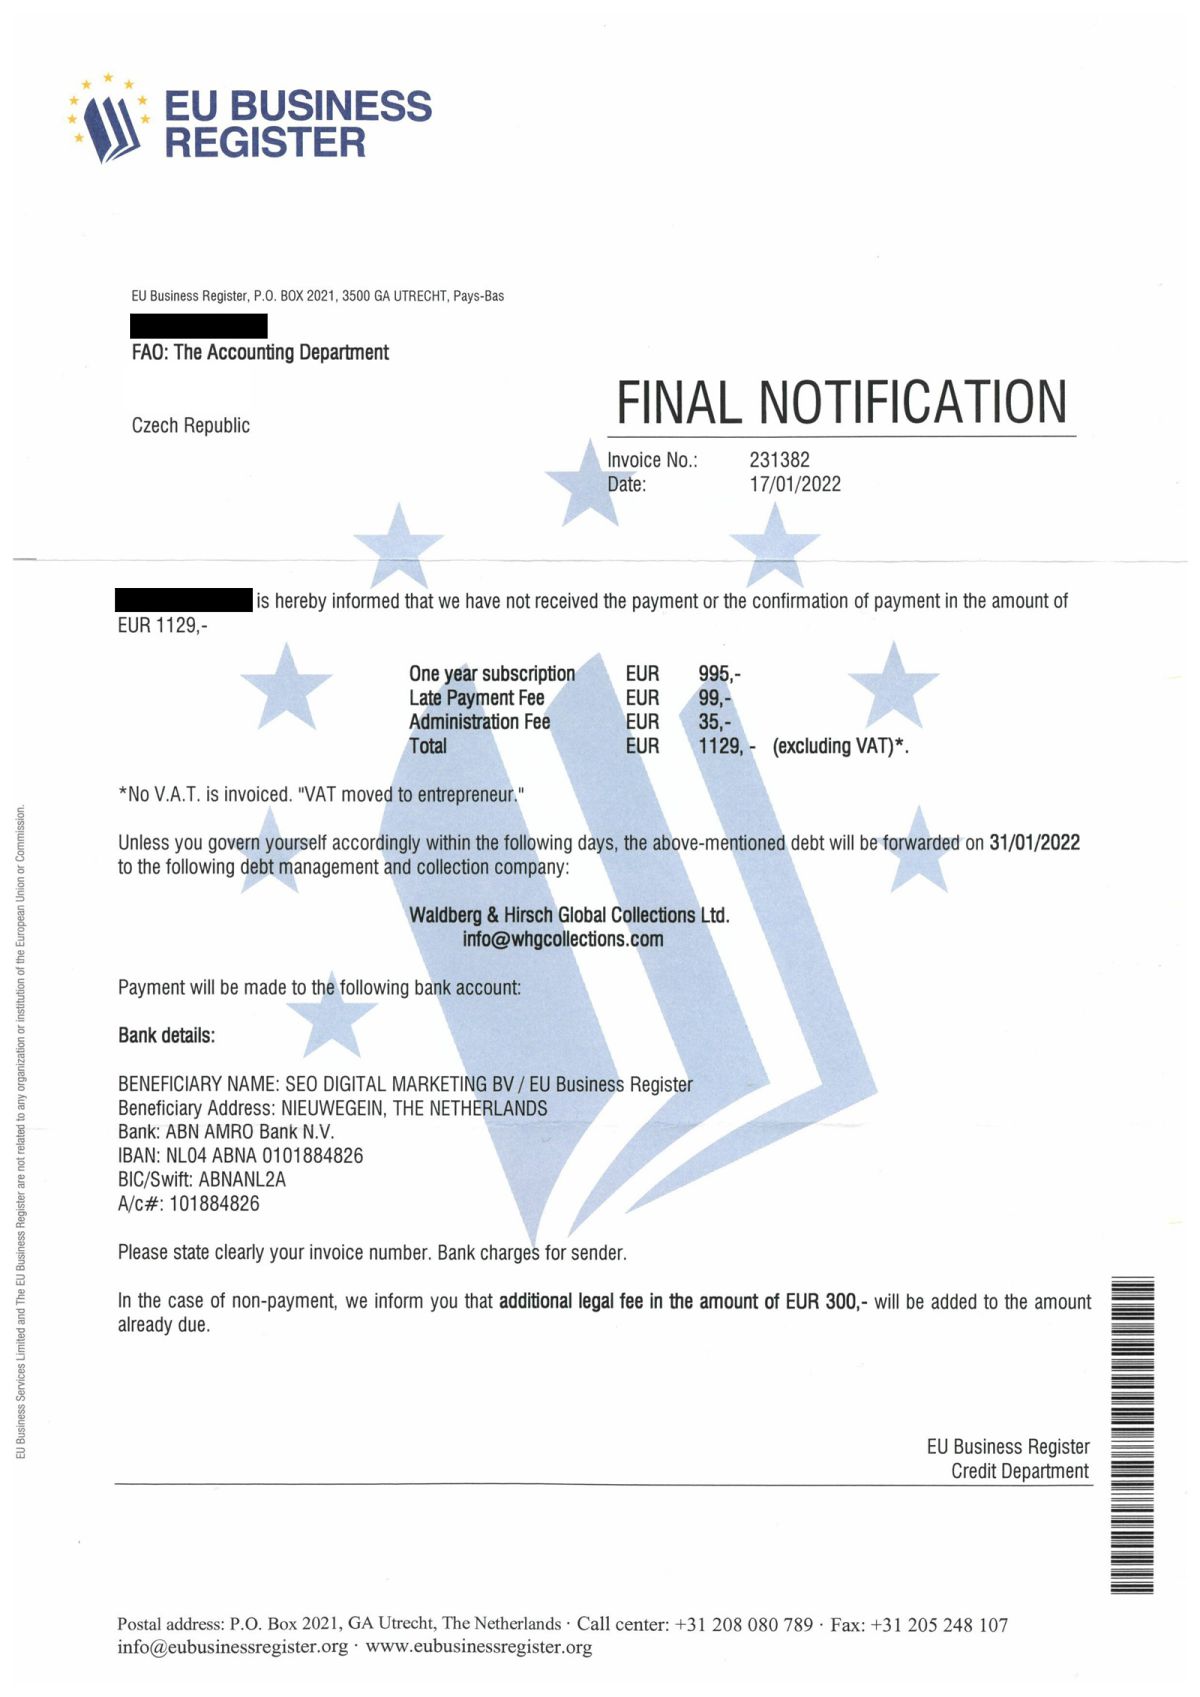 “EU Business Register” spam’i: ödeme yapmazsanız ne olur?